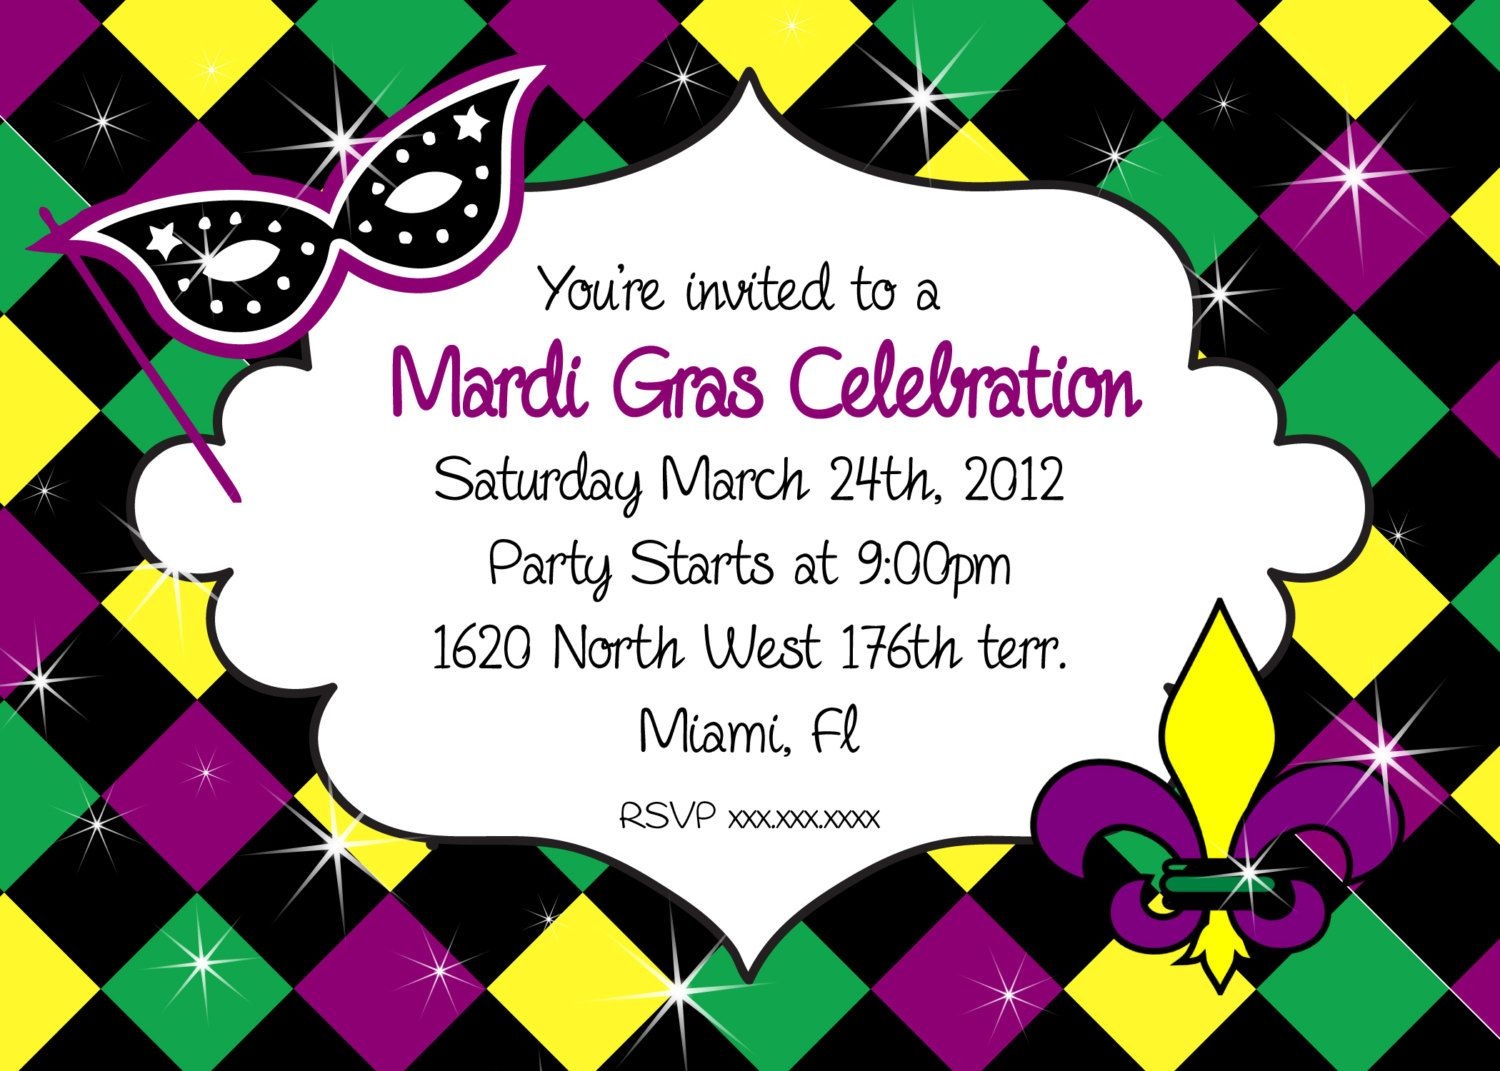 Mardi Gras Party Invitations - Cloudinvitation | Mardi Gras - Free Printable Mardi Gras Invitations